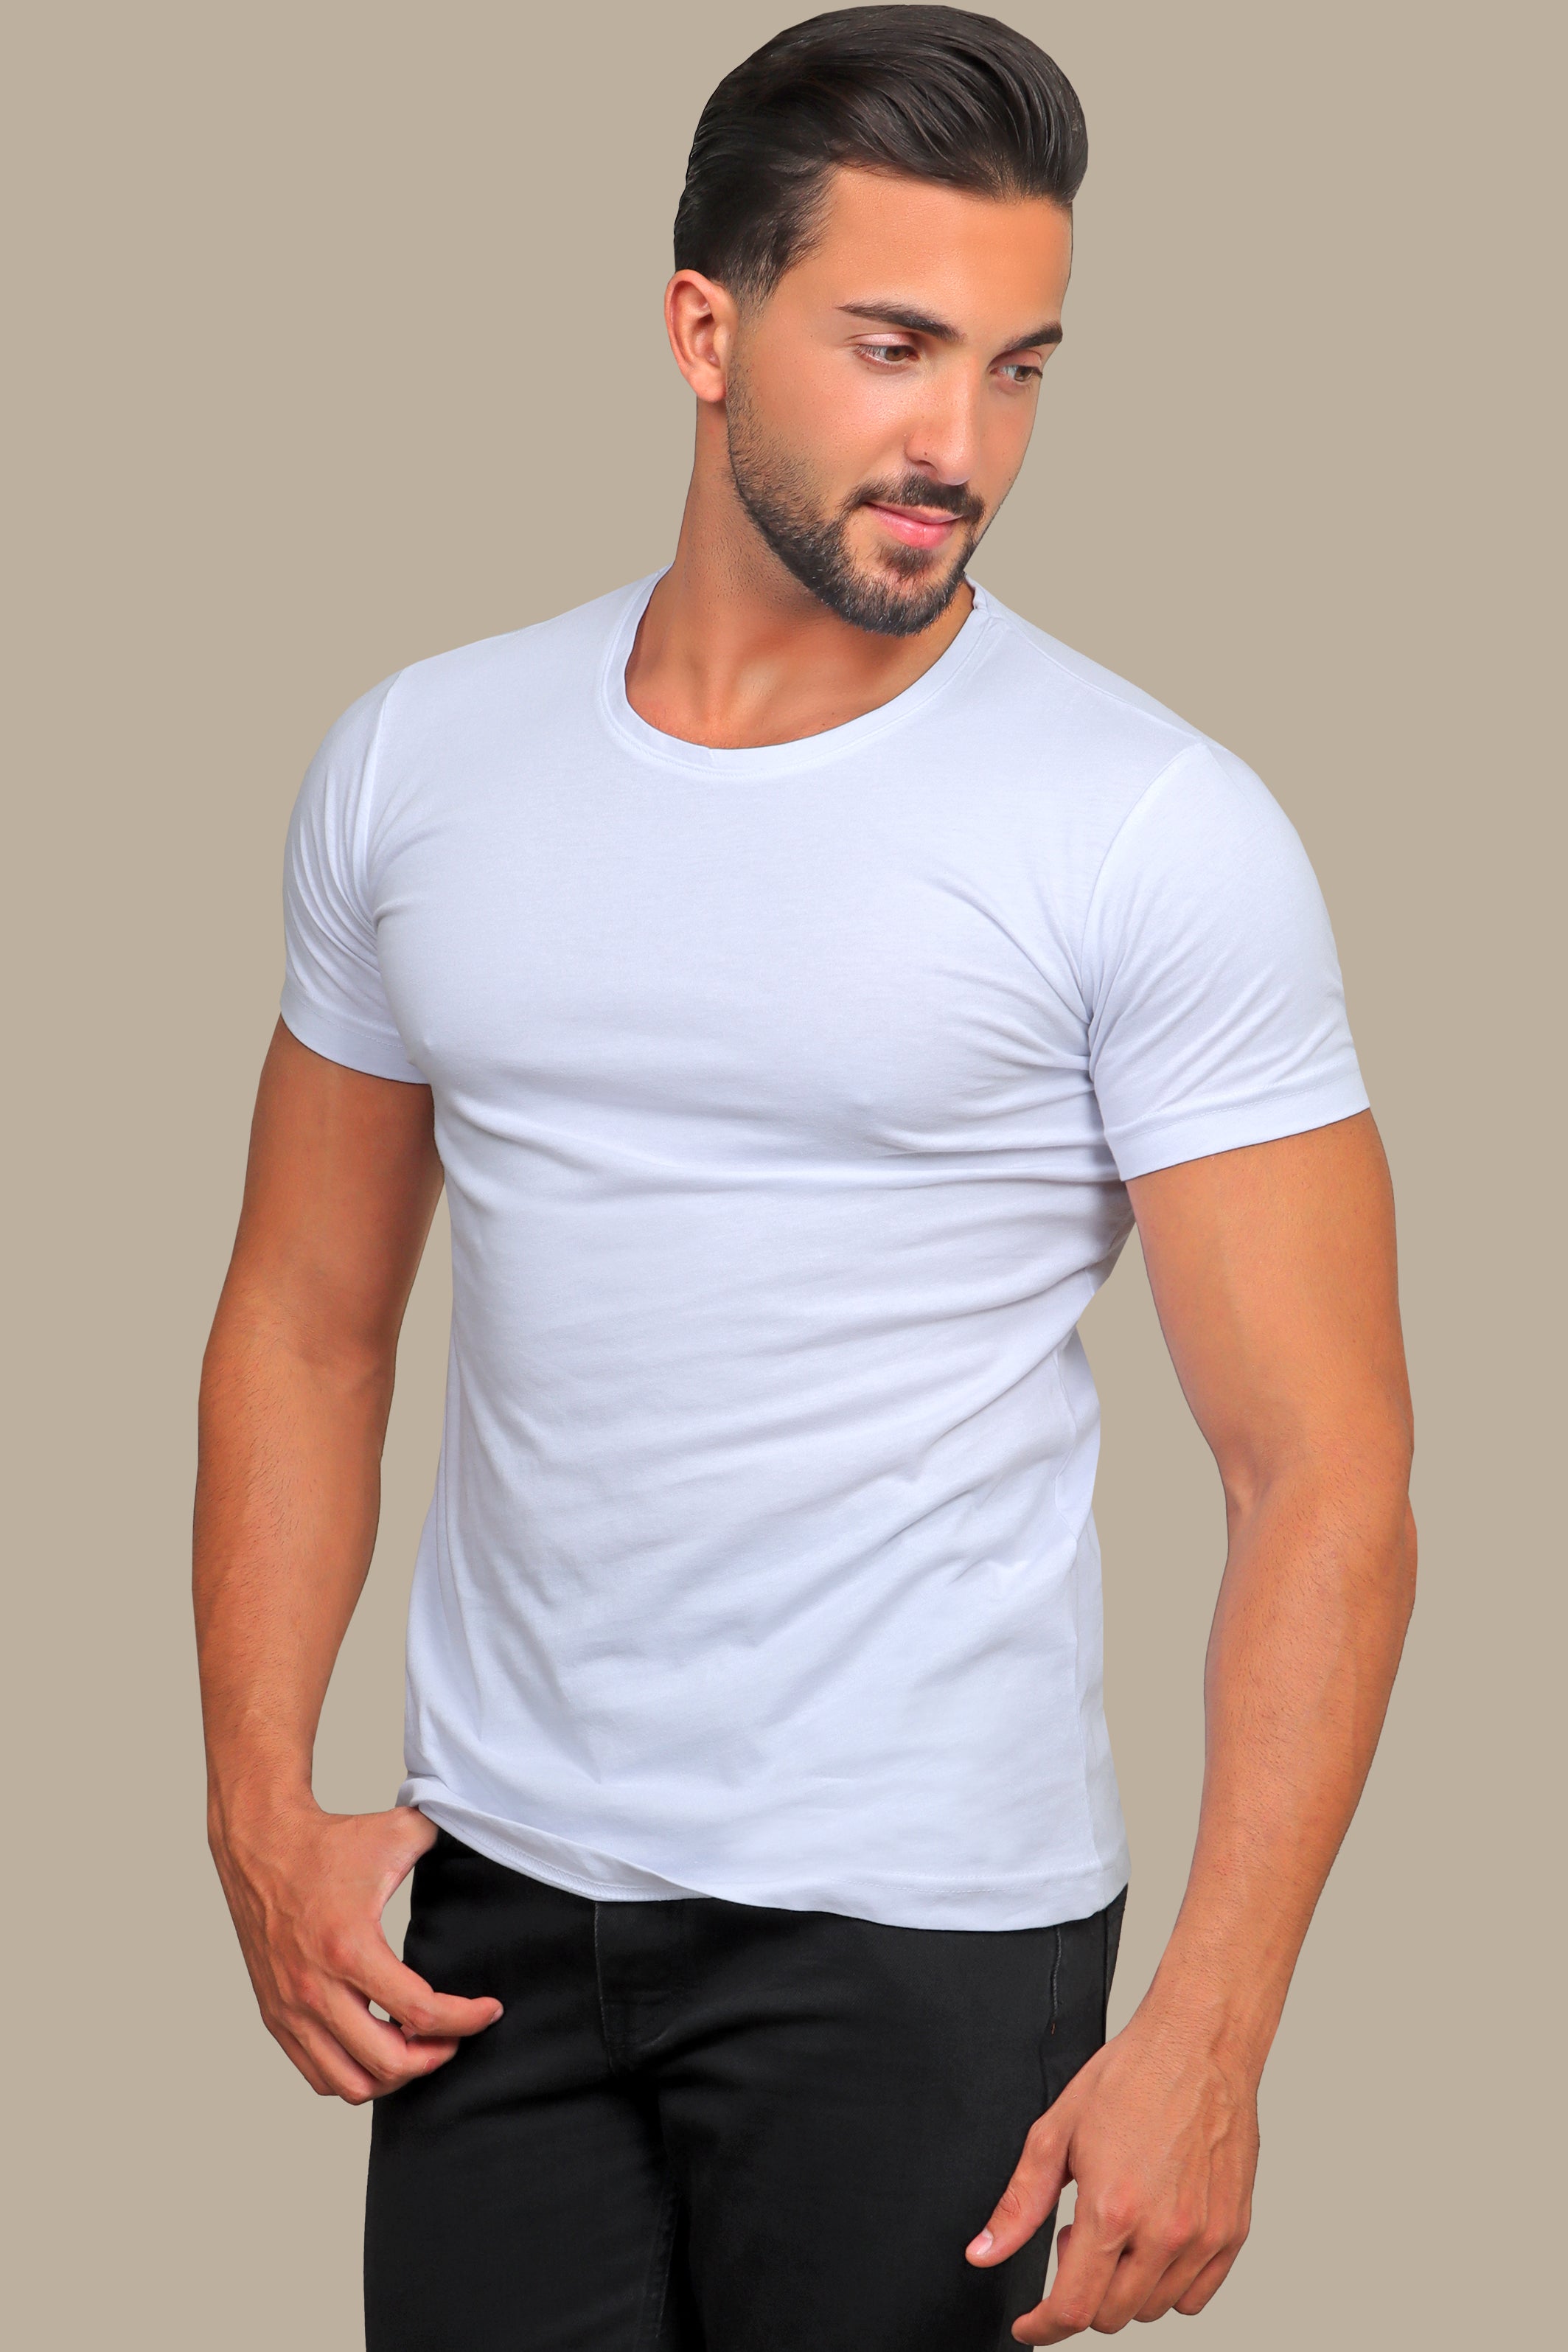 Pure Elegance: White Essentials in Basic Short Sleeve Round Neck